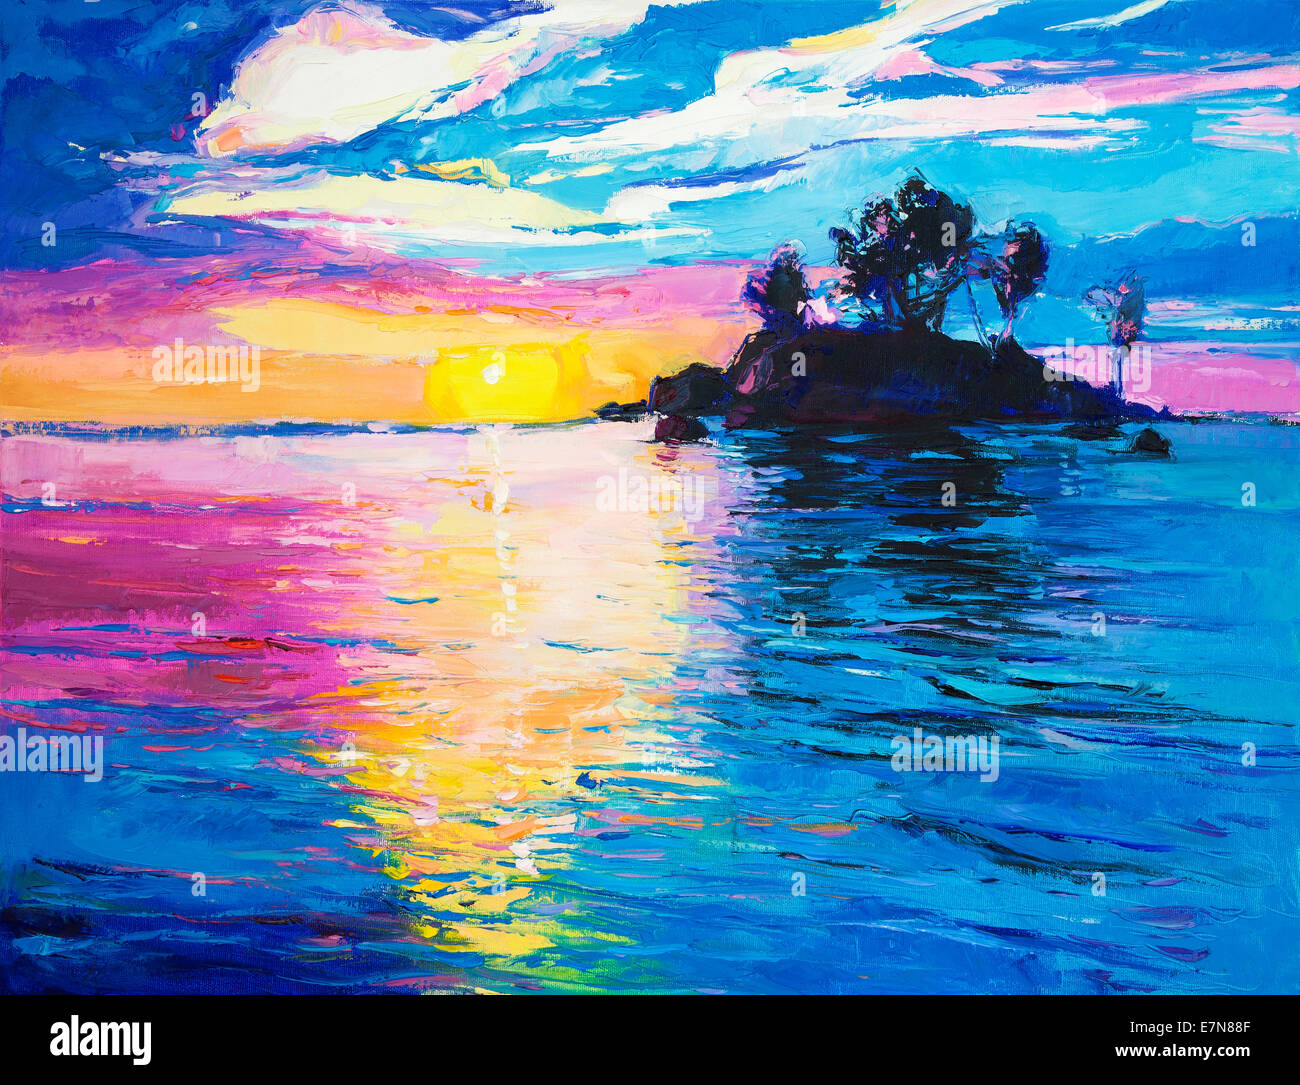 Peinture à l'huile d'origine de l'île déserte et la mer sur toile.riche de soleil colorés sur l'océan.impressionnisme moderne Banque D'Images